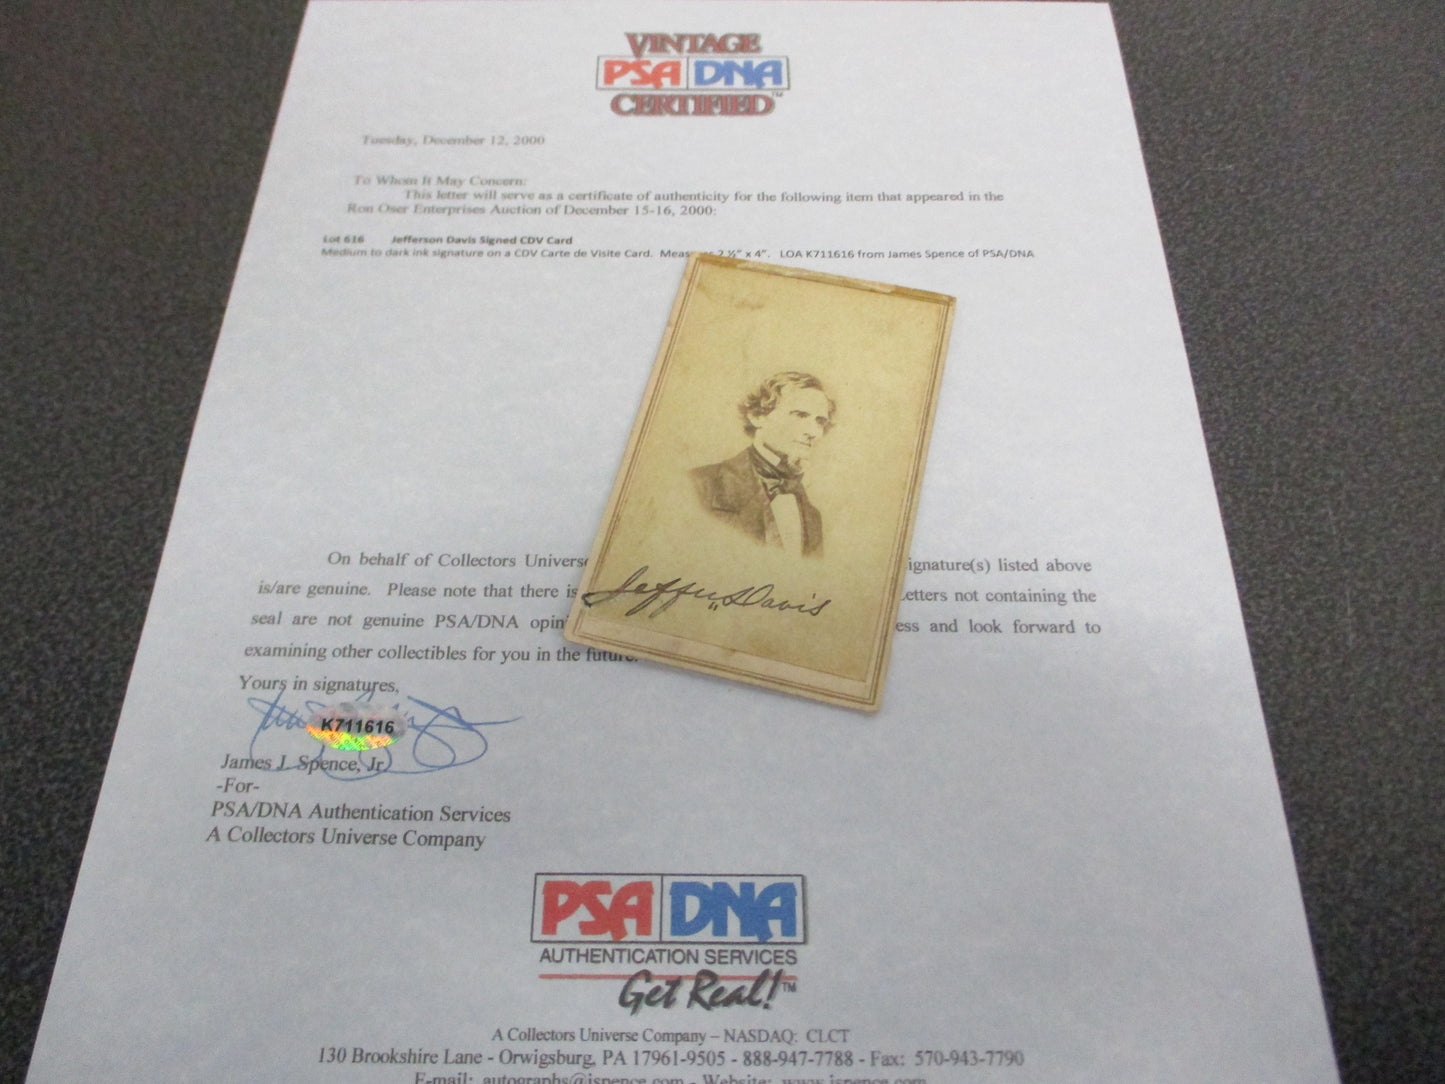 Jefferson Davis Signed CDV Card (Carte de Visite) w/ COA